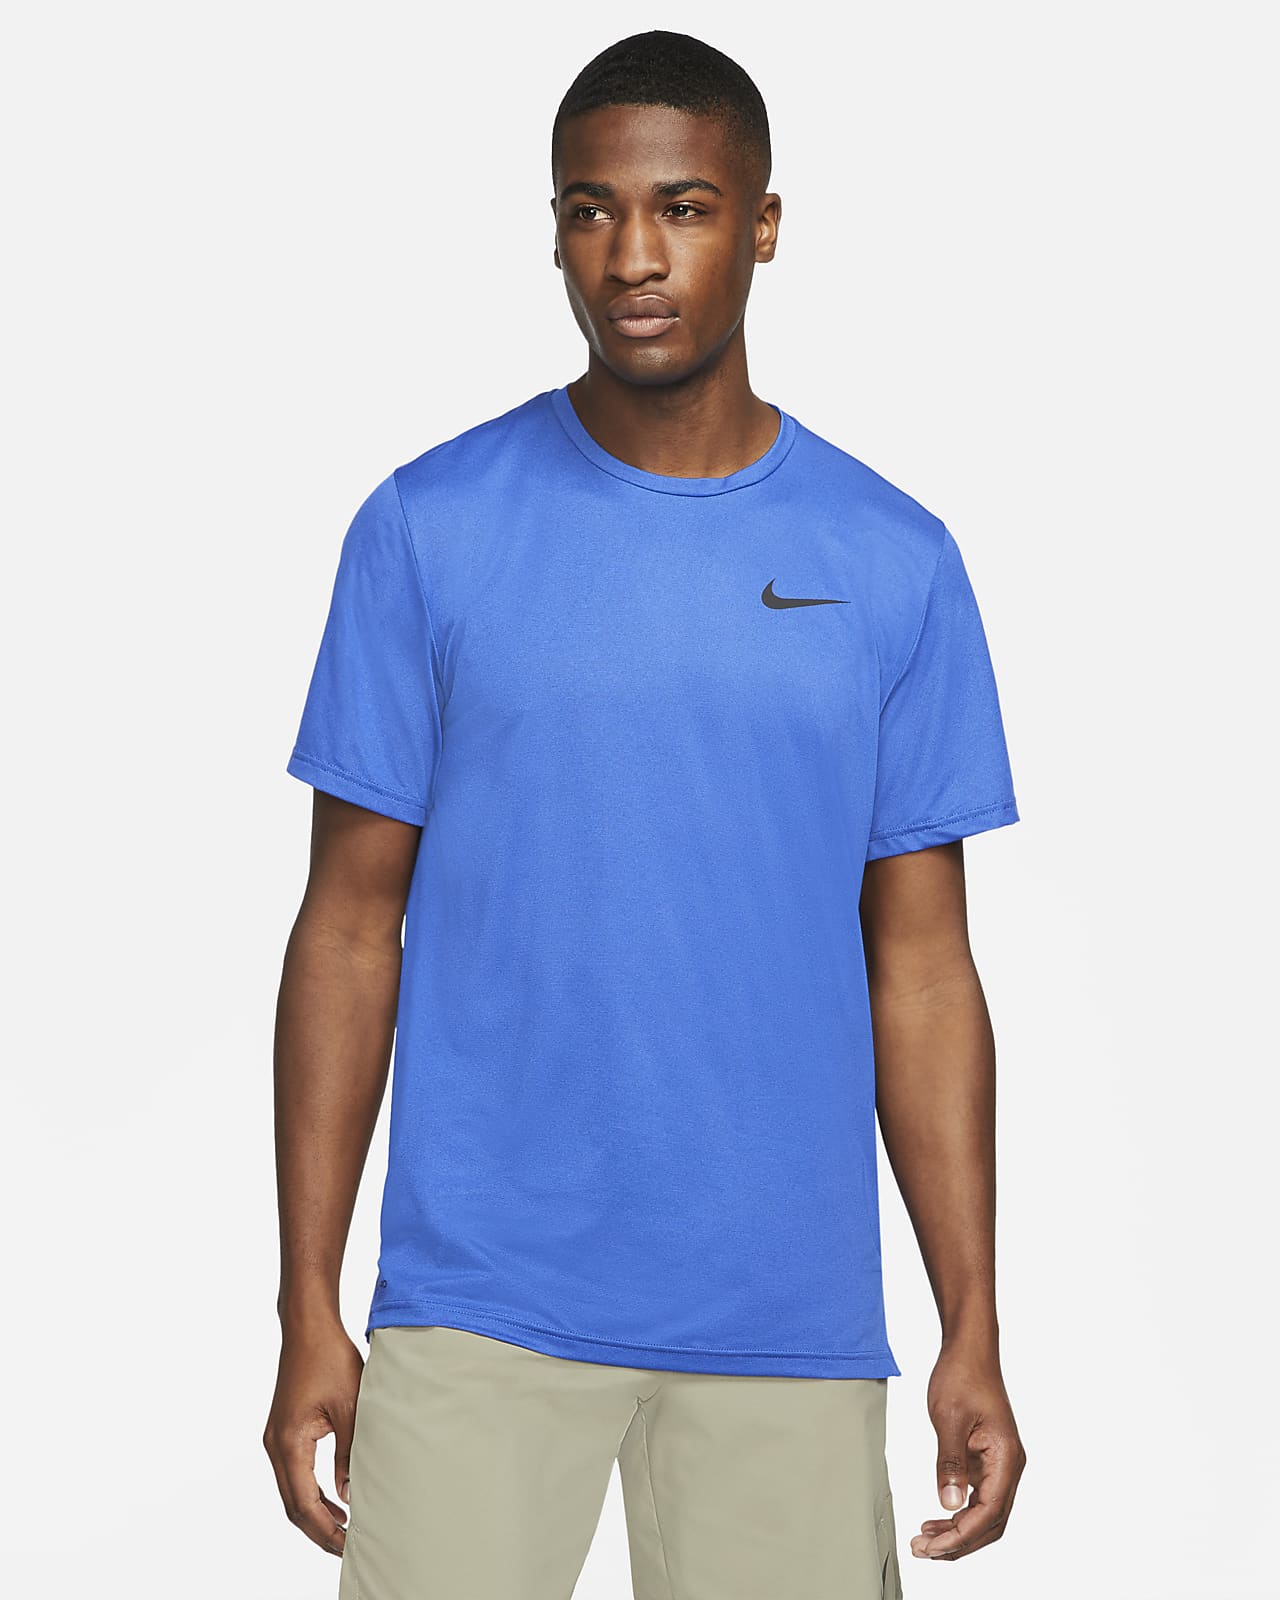 Apariencia medios de comunicación Unión Nike Pro Dri-FIT Camiseta de manga corta - Hombre. Nike ES